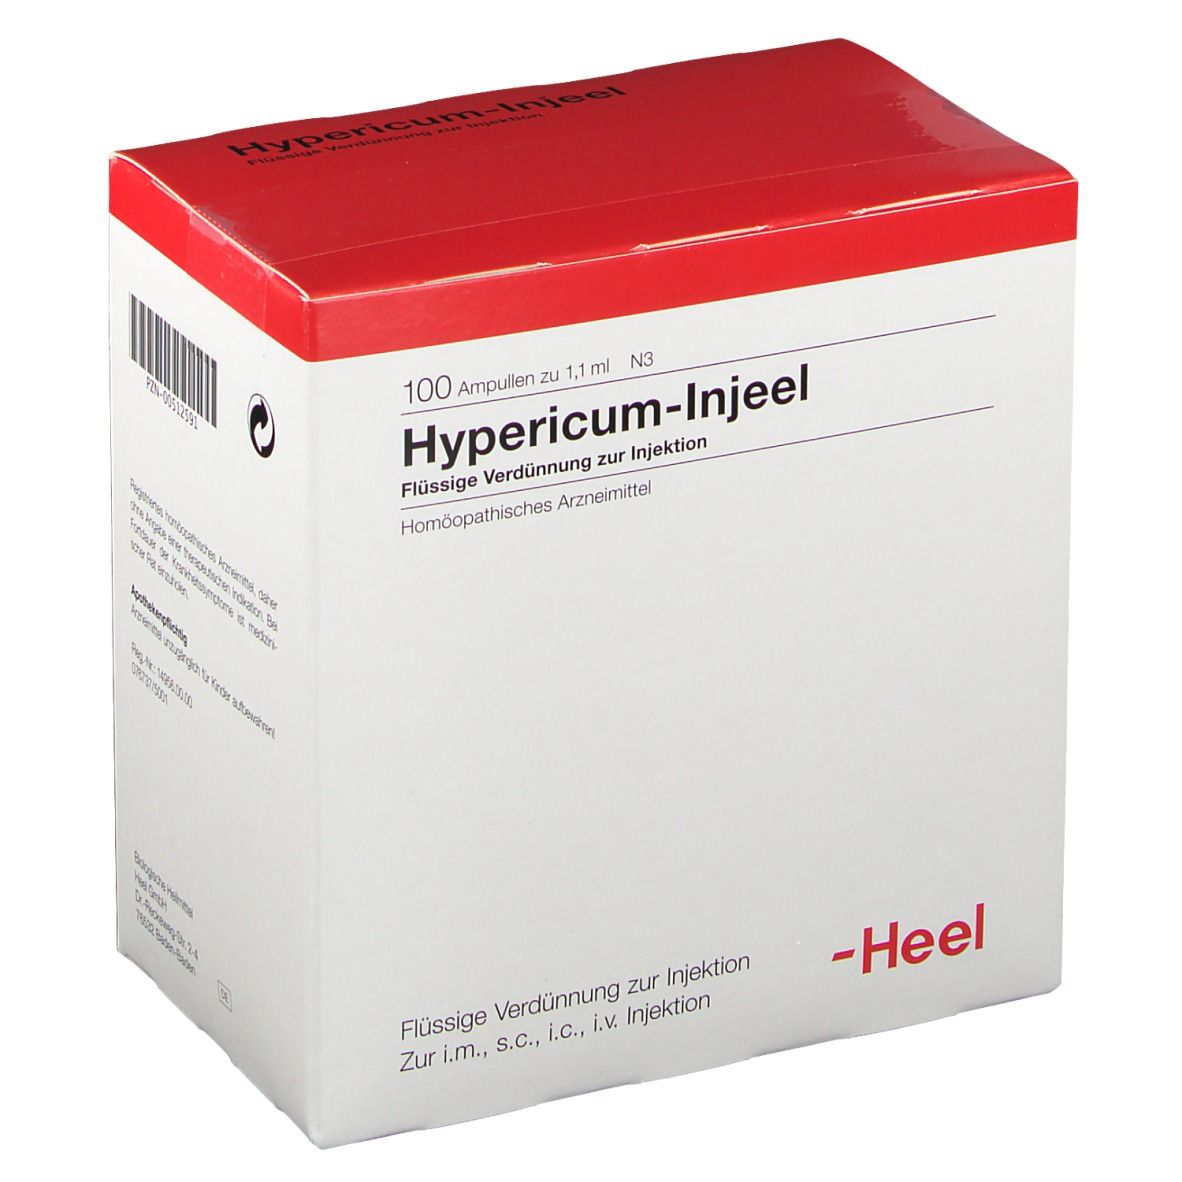 Hypericum-Injeel® Ampullen